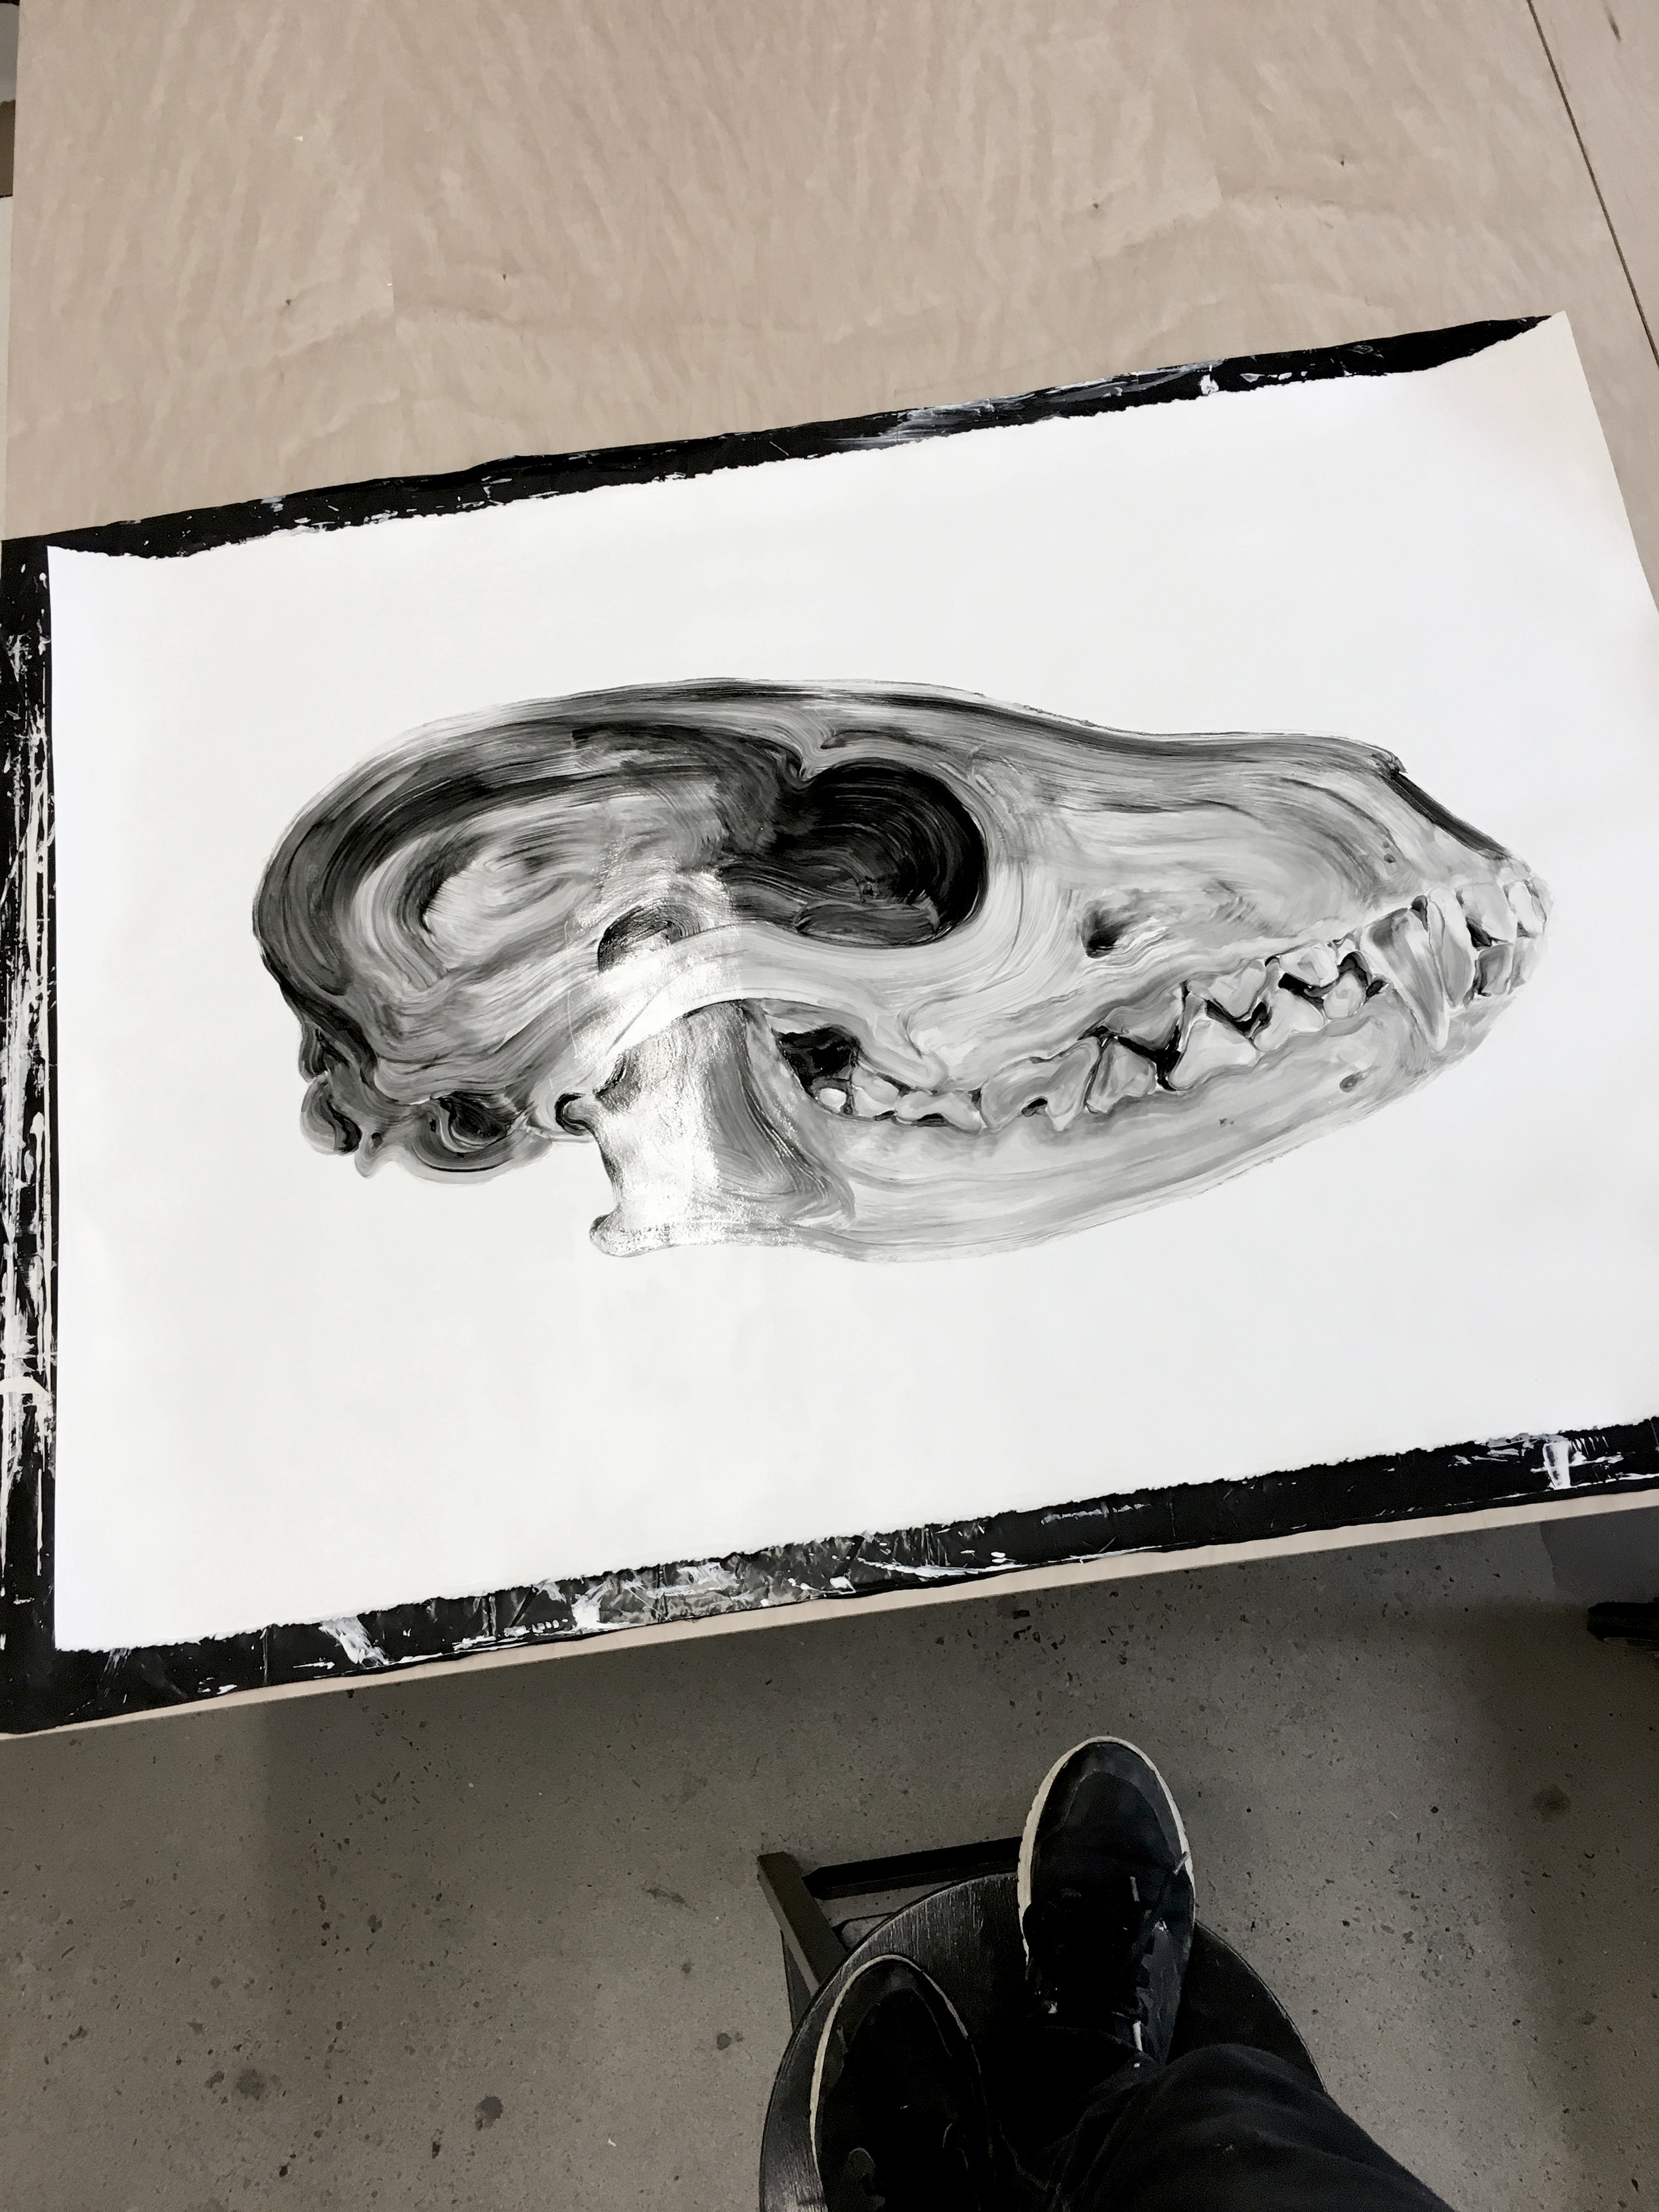  Crâne d'un renard  Huile sur papier    